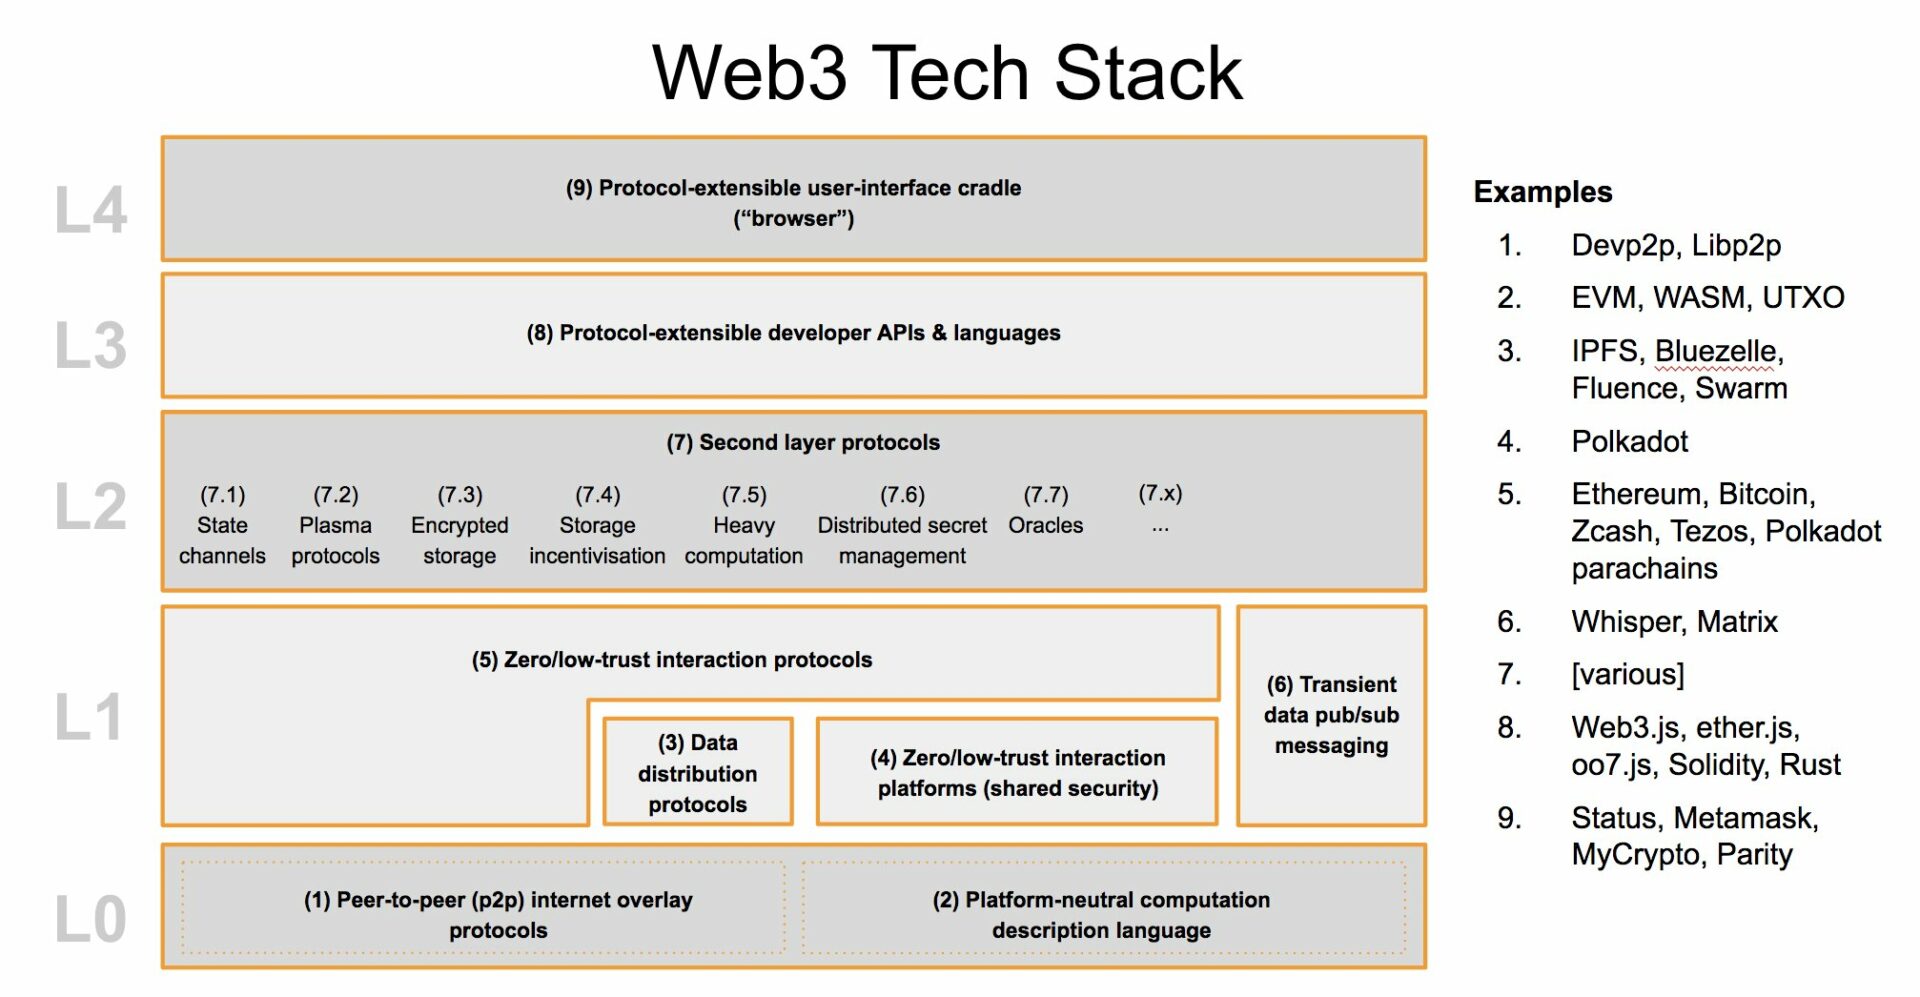 Web3 tech stack